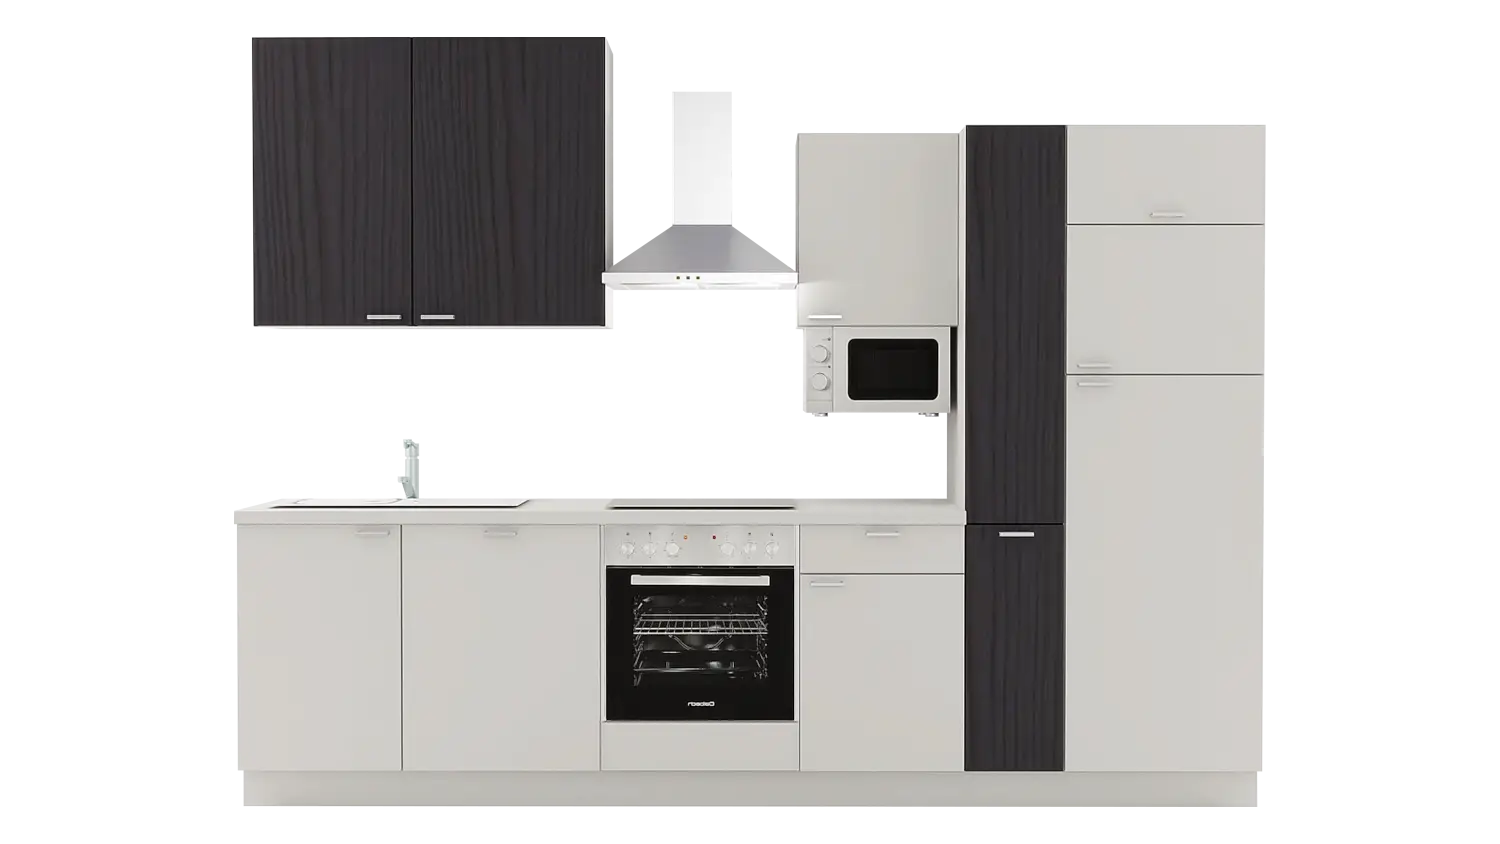 Express Küchenzeile ohne Geräte in Hellgrau & Esche schwarz: 310 cm, Spüle links | Küchenblock "EXK470-2-0-l" / Bild 1